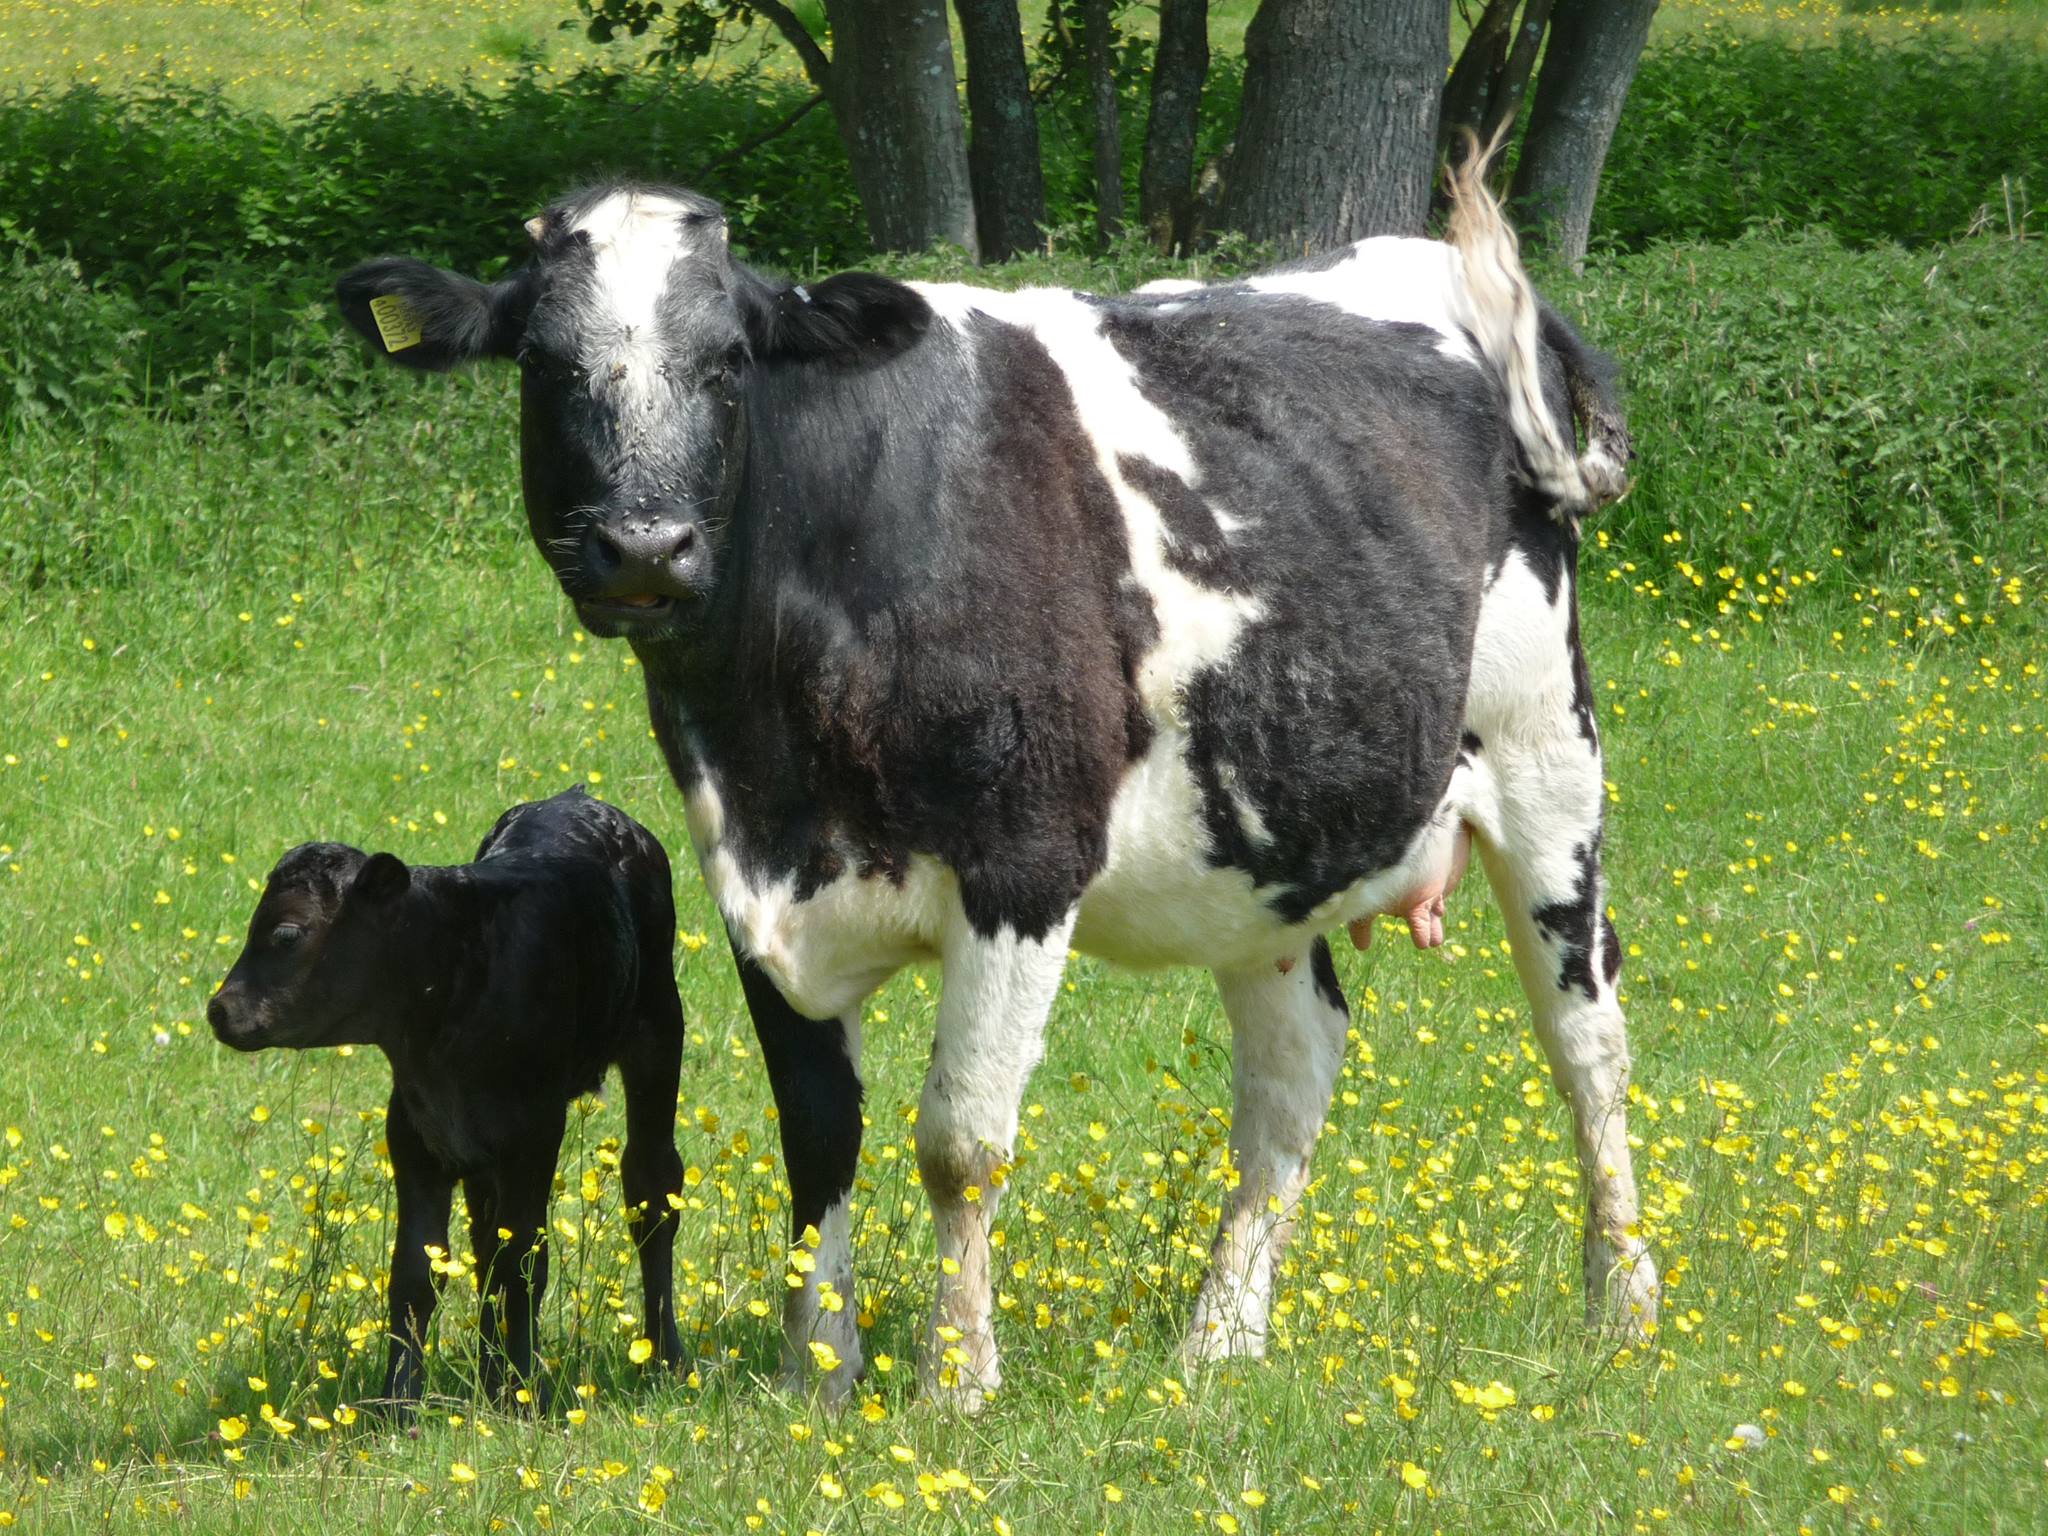 mum and baby calf